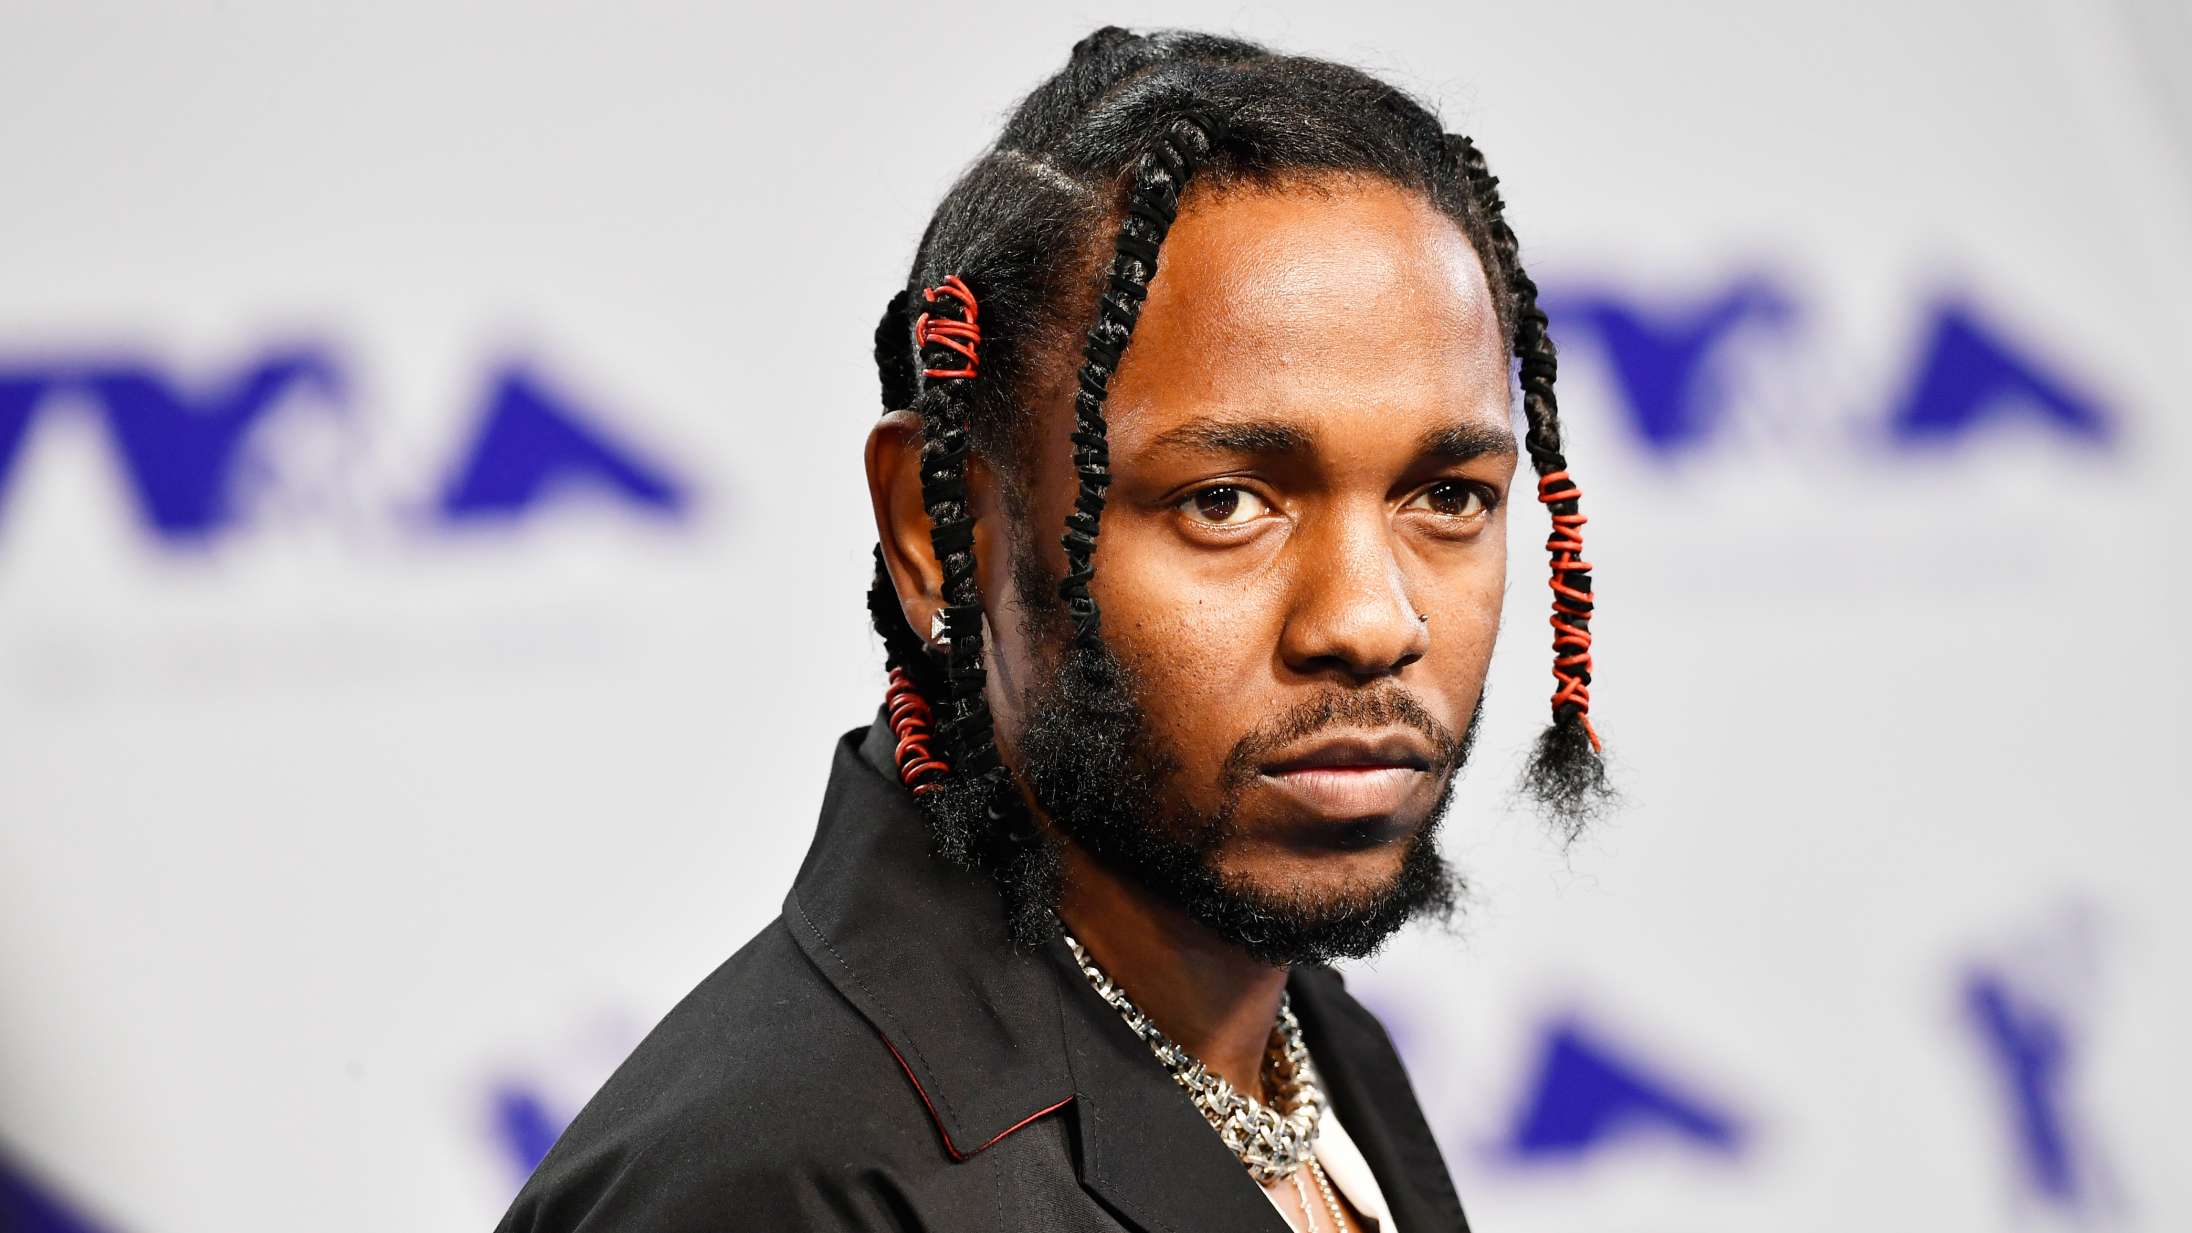 Kendrick Lamar annoncerer nyt firma – men hvad går det egentlig ud på?